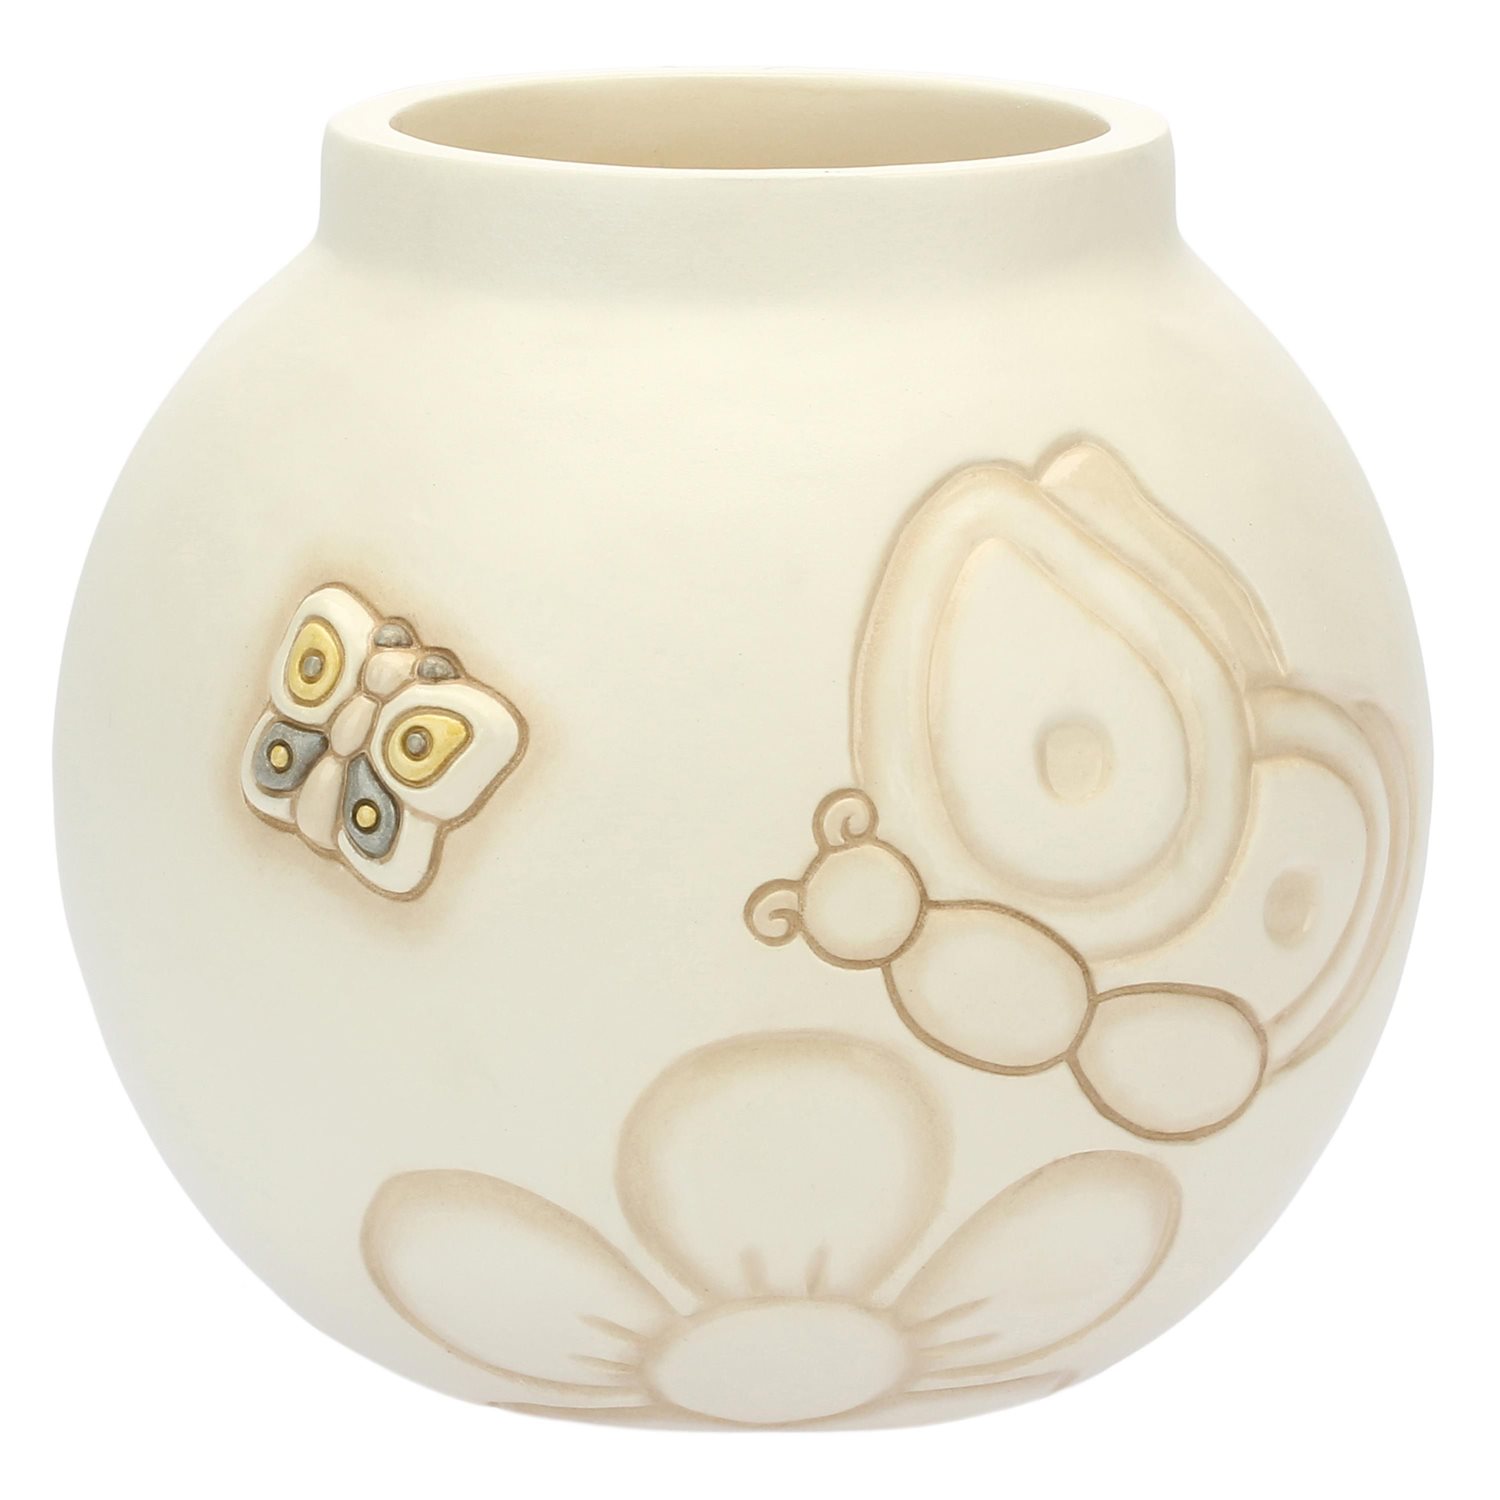 Oiritaly Vaso - Thun - C2564H90 - Ceramica